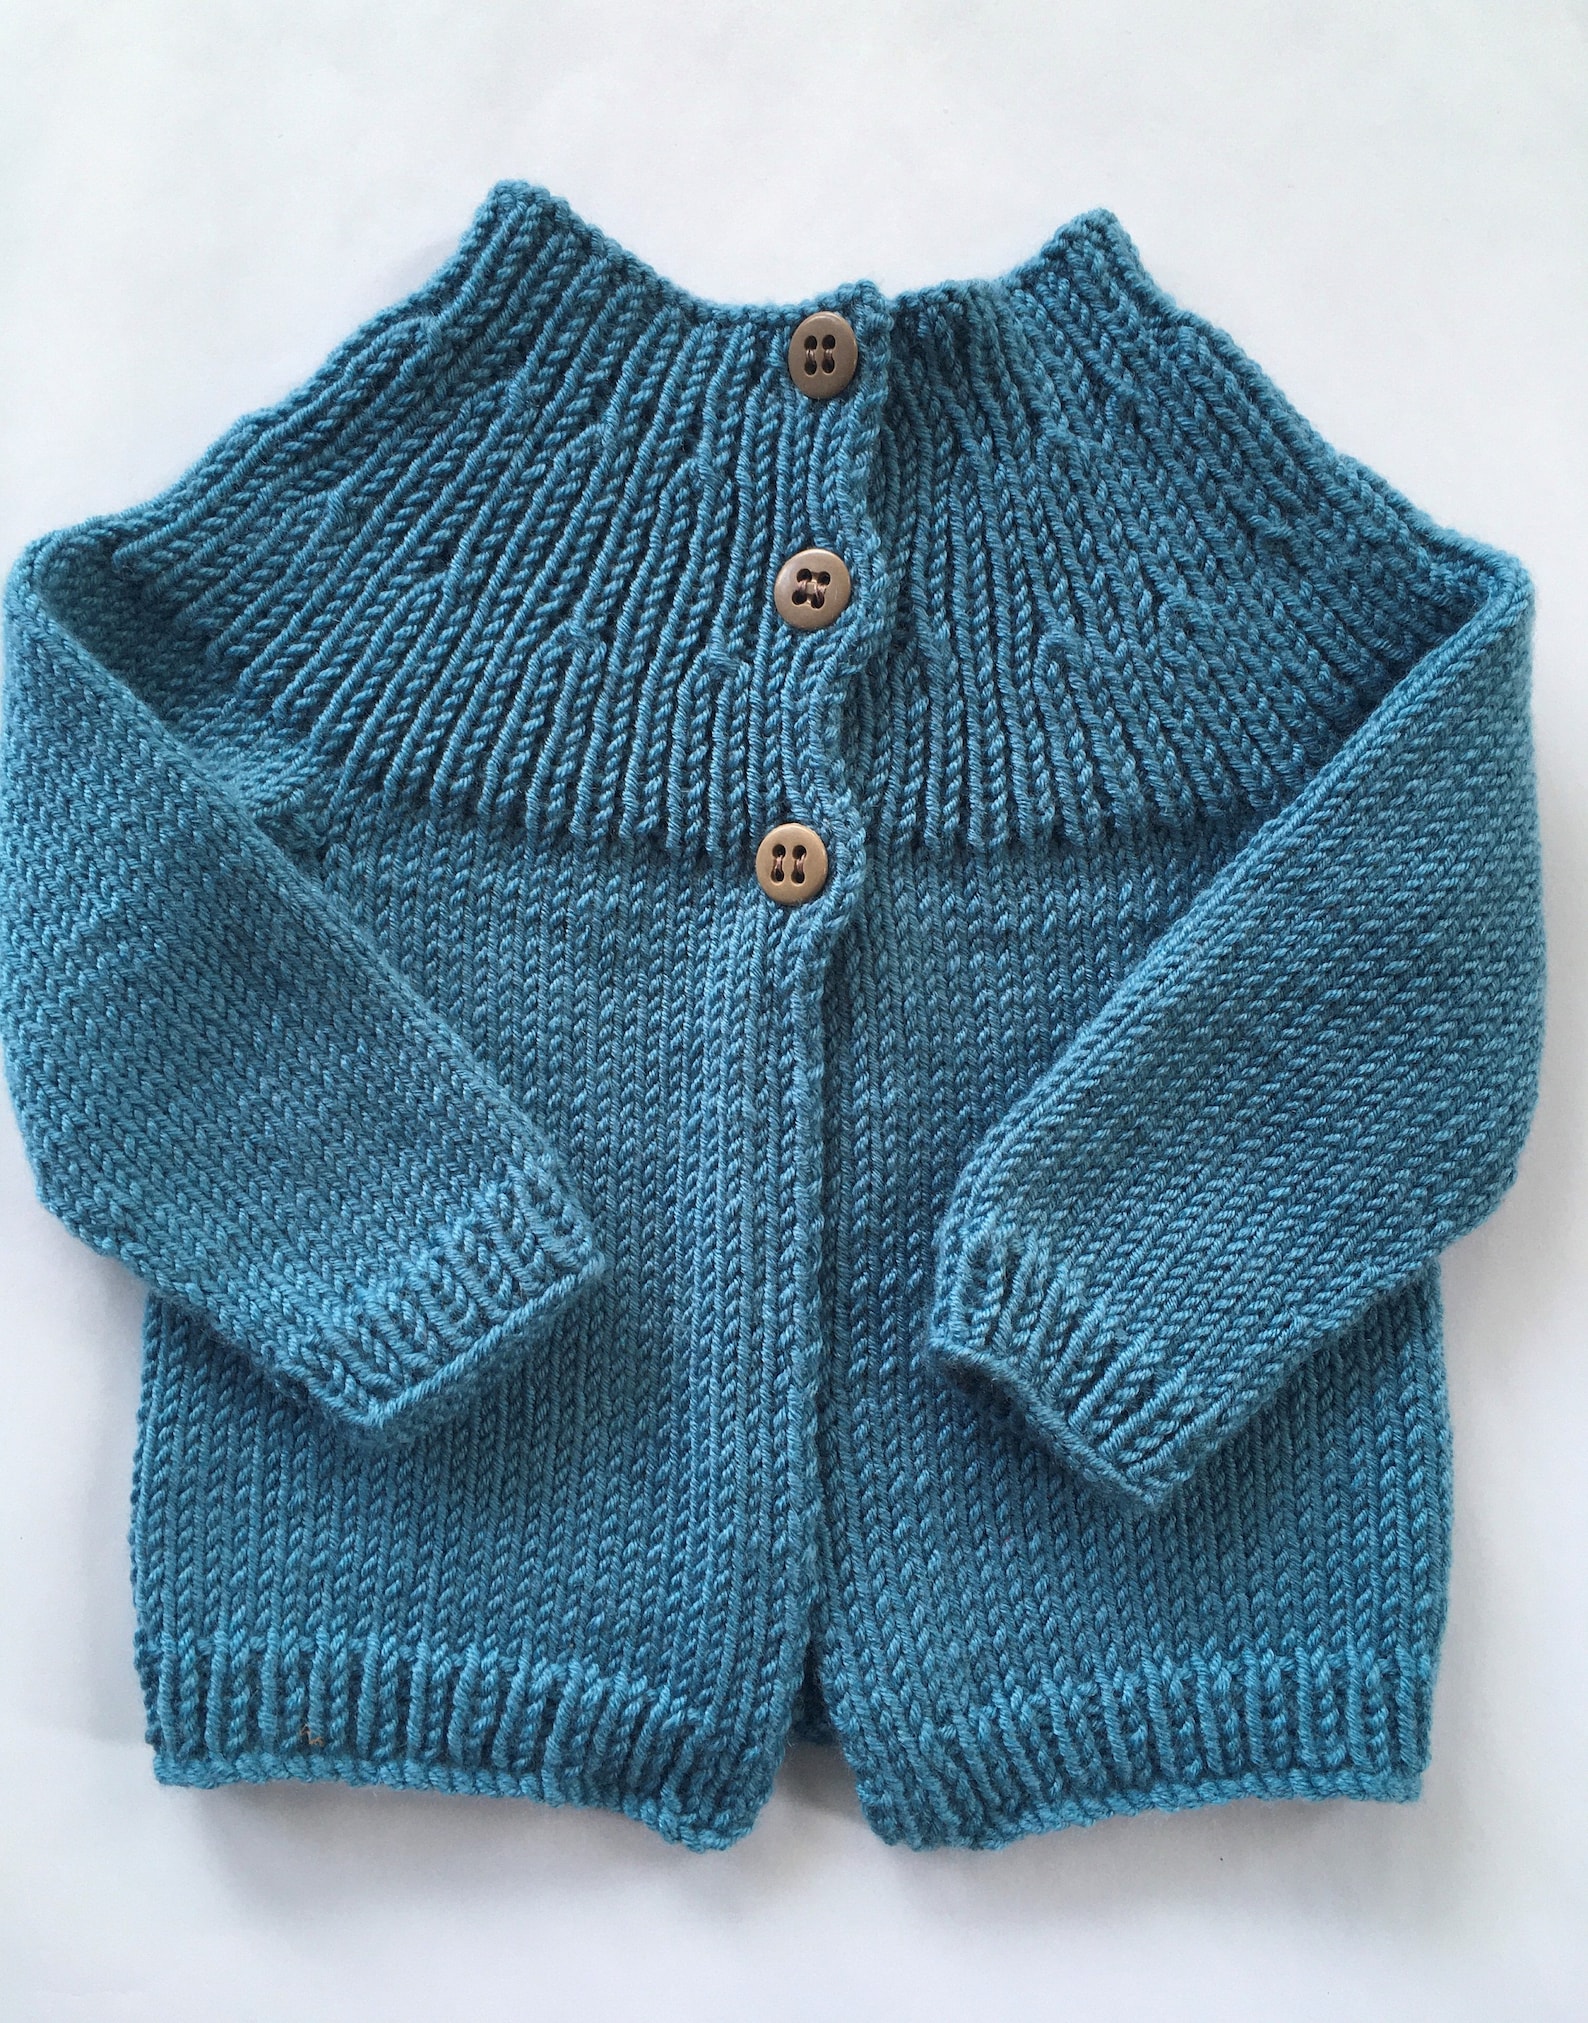 Baby Cardigan Knitting Pattern - Etsy